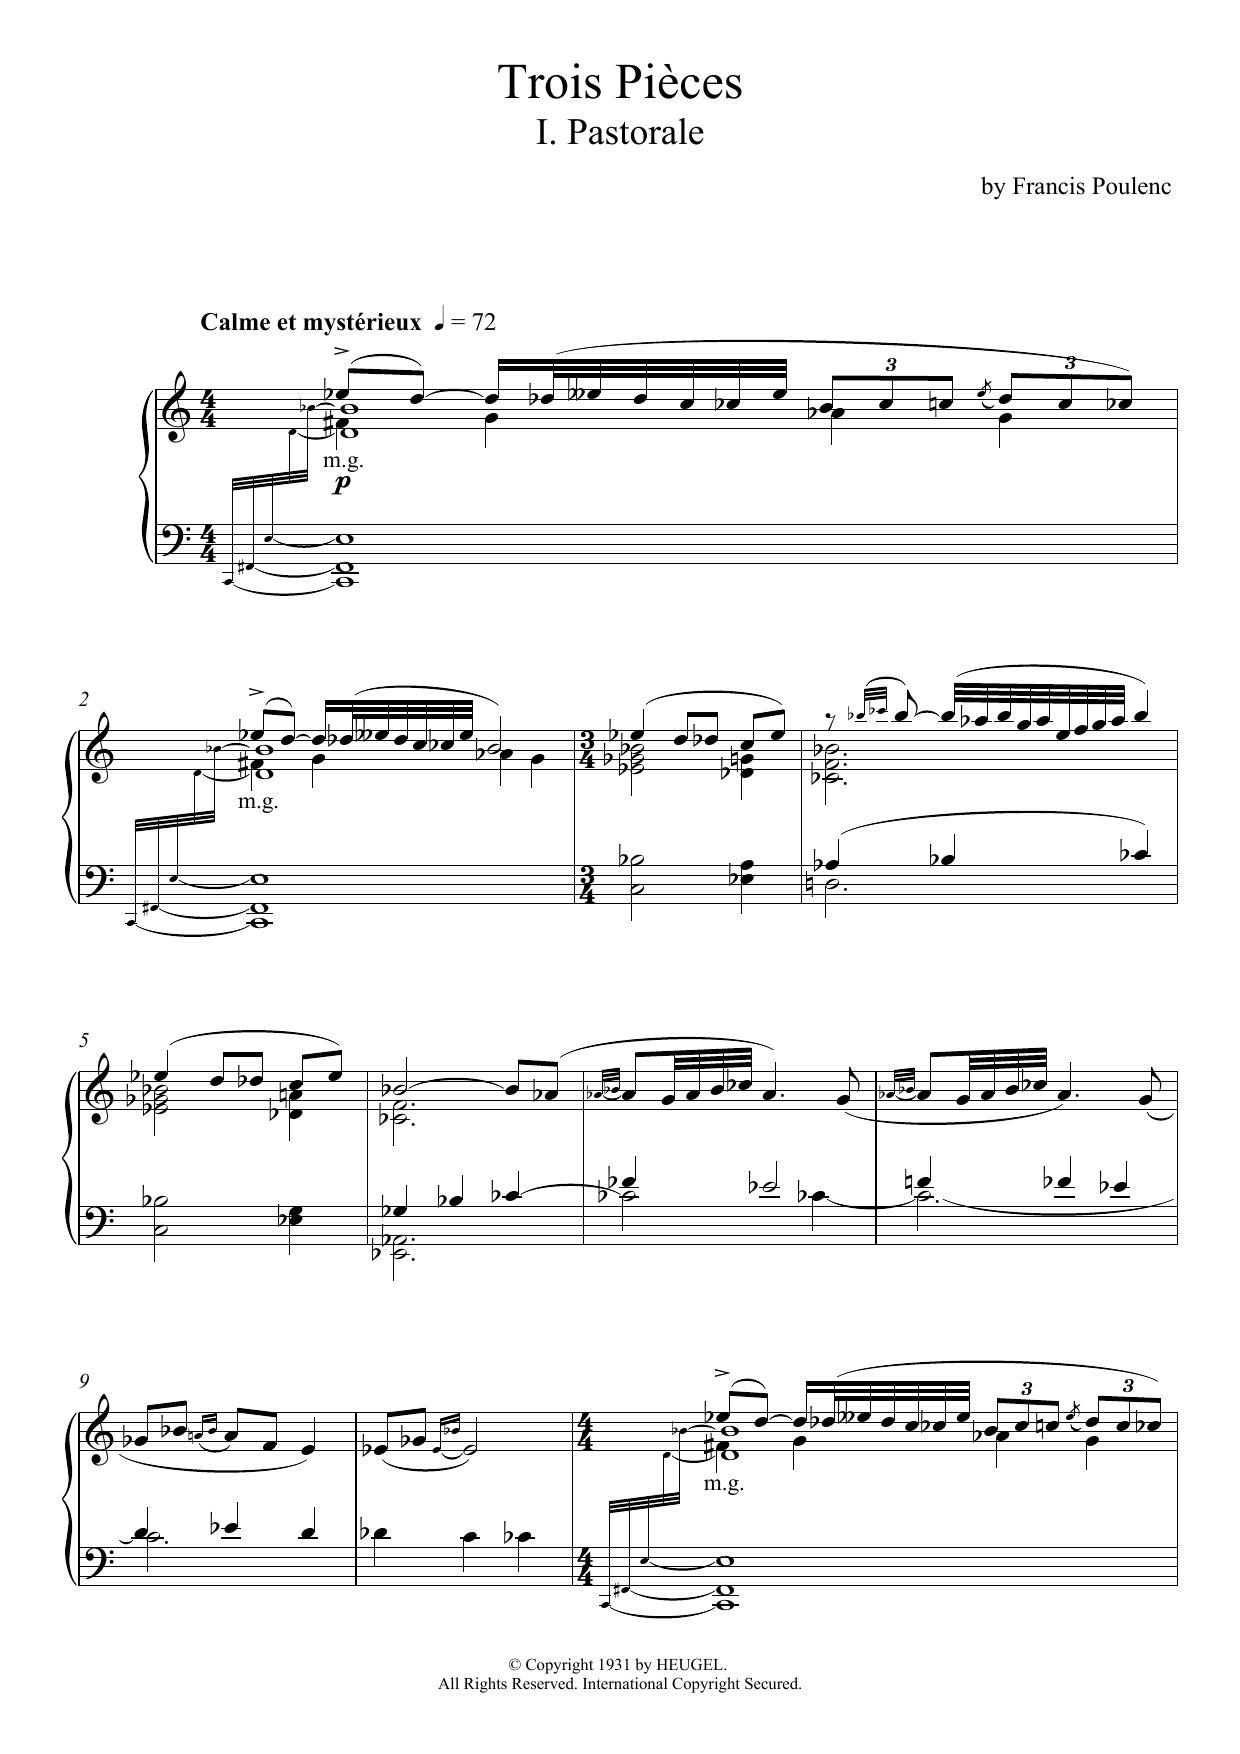 Download Francis Poulenc Trois Pièces - I. Pastorale Sheet Music